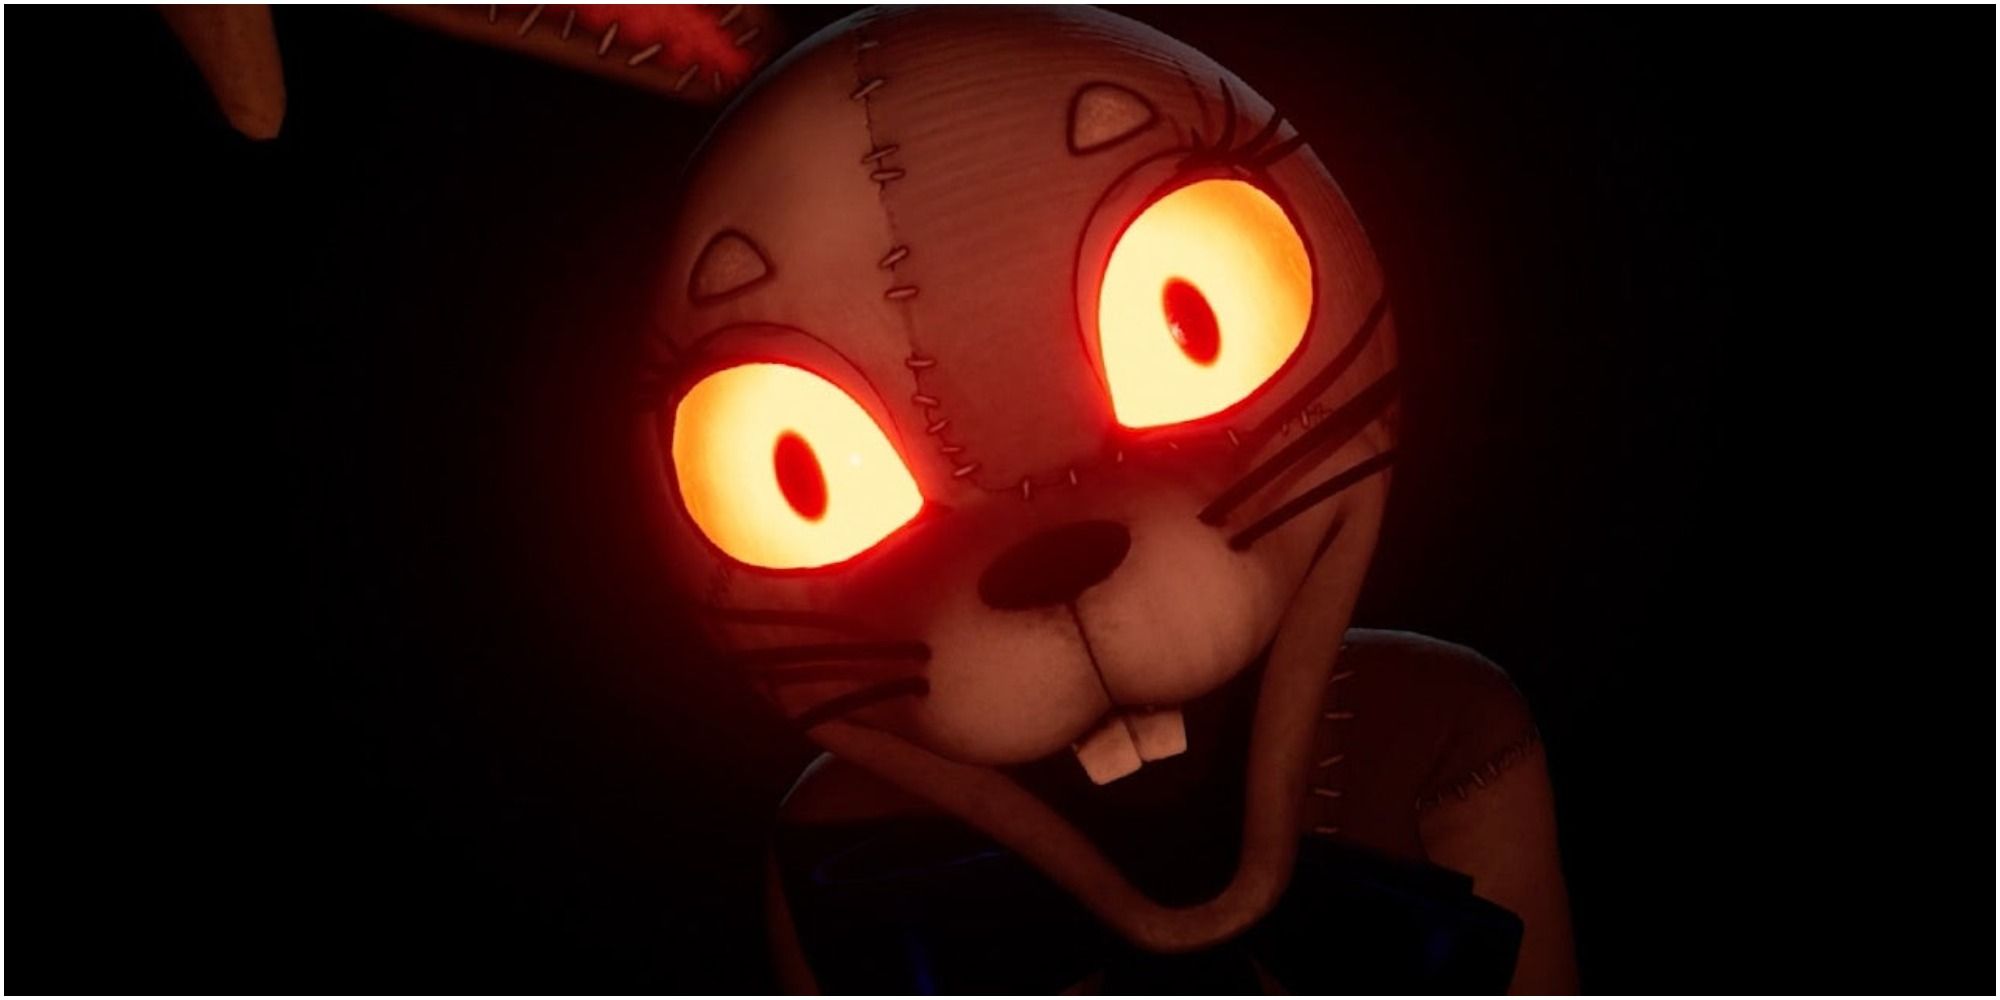 bunny animatronicwith glowing eyes